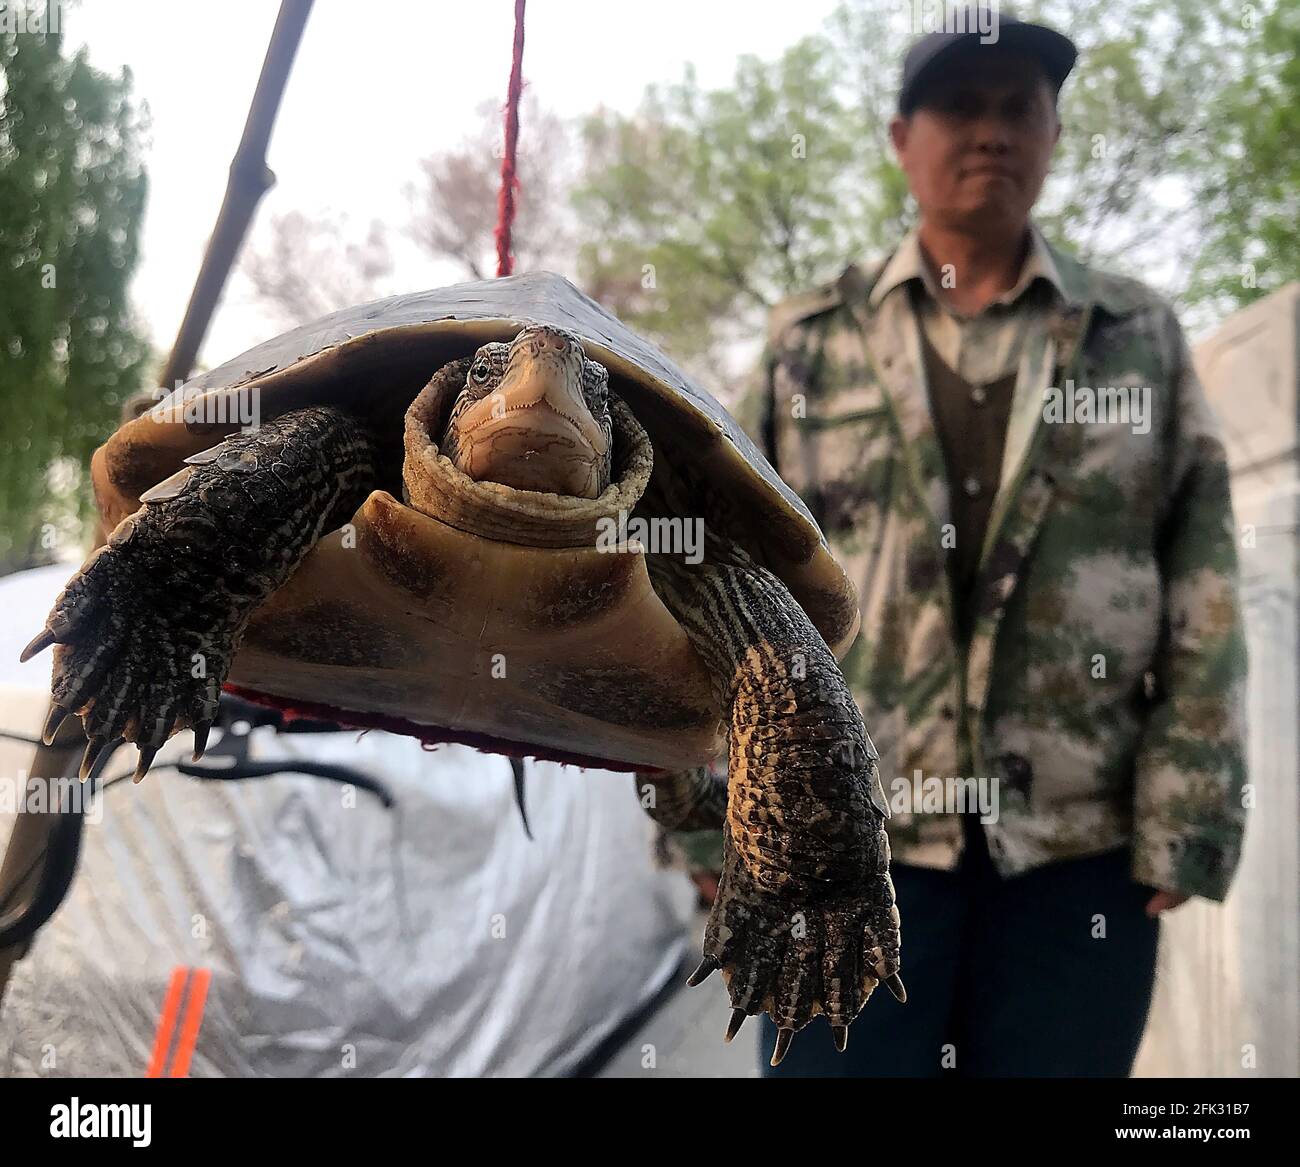 Pekín, China. 27th de Abr de 2021. Un hombre chino migrante vende una tortuga silvestre cerca de un mercado de alimentos en Beijing el martes, 27 de abril de 2021. China ha prohibido la venta de animales salvajes para la alimentación en la mayoría de las provincias debido a la amenaza de otro brote tipo coronavirus debido a la cuestionable inocuidad de los alimentos. Foto de Stephen Shaver/UPI Crédito: UPI/Alamy Live News Foto de stock